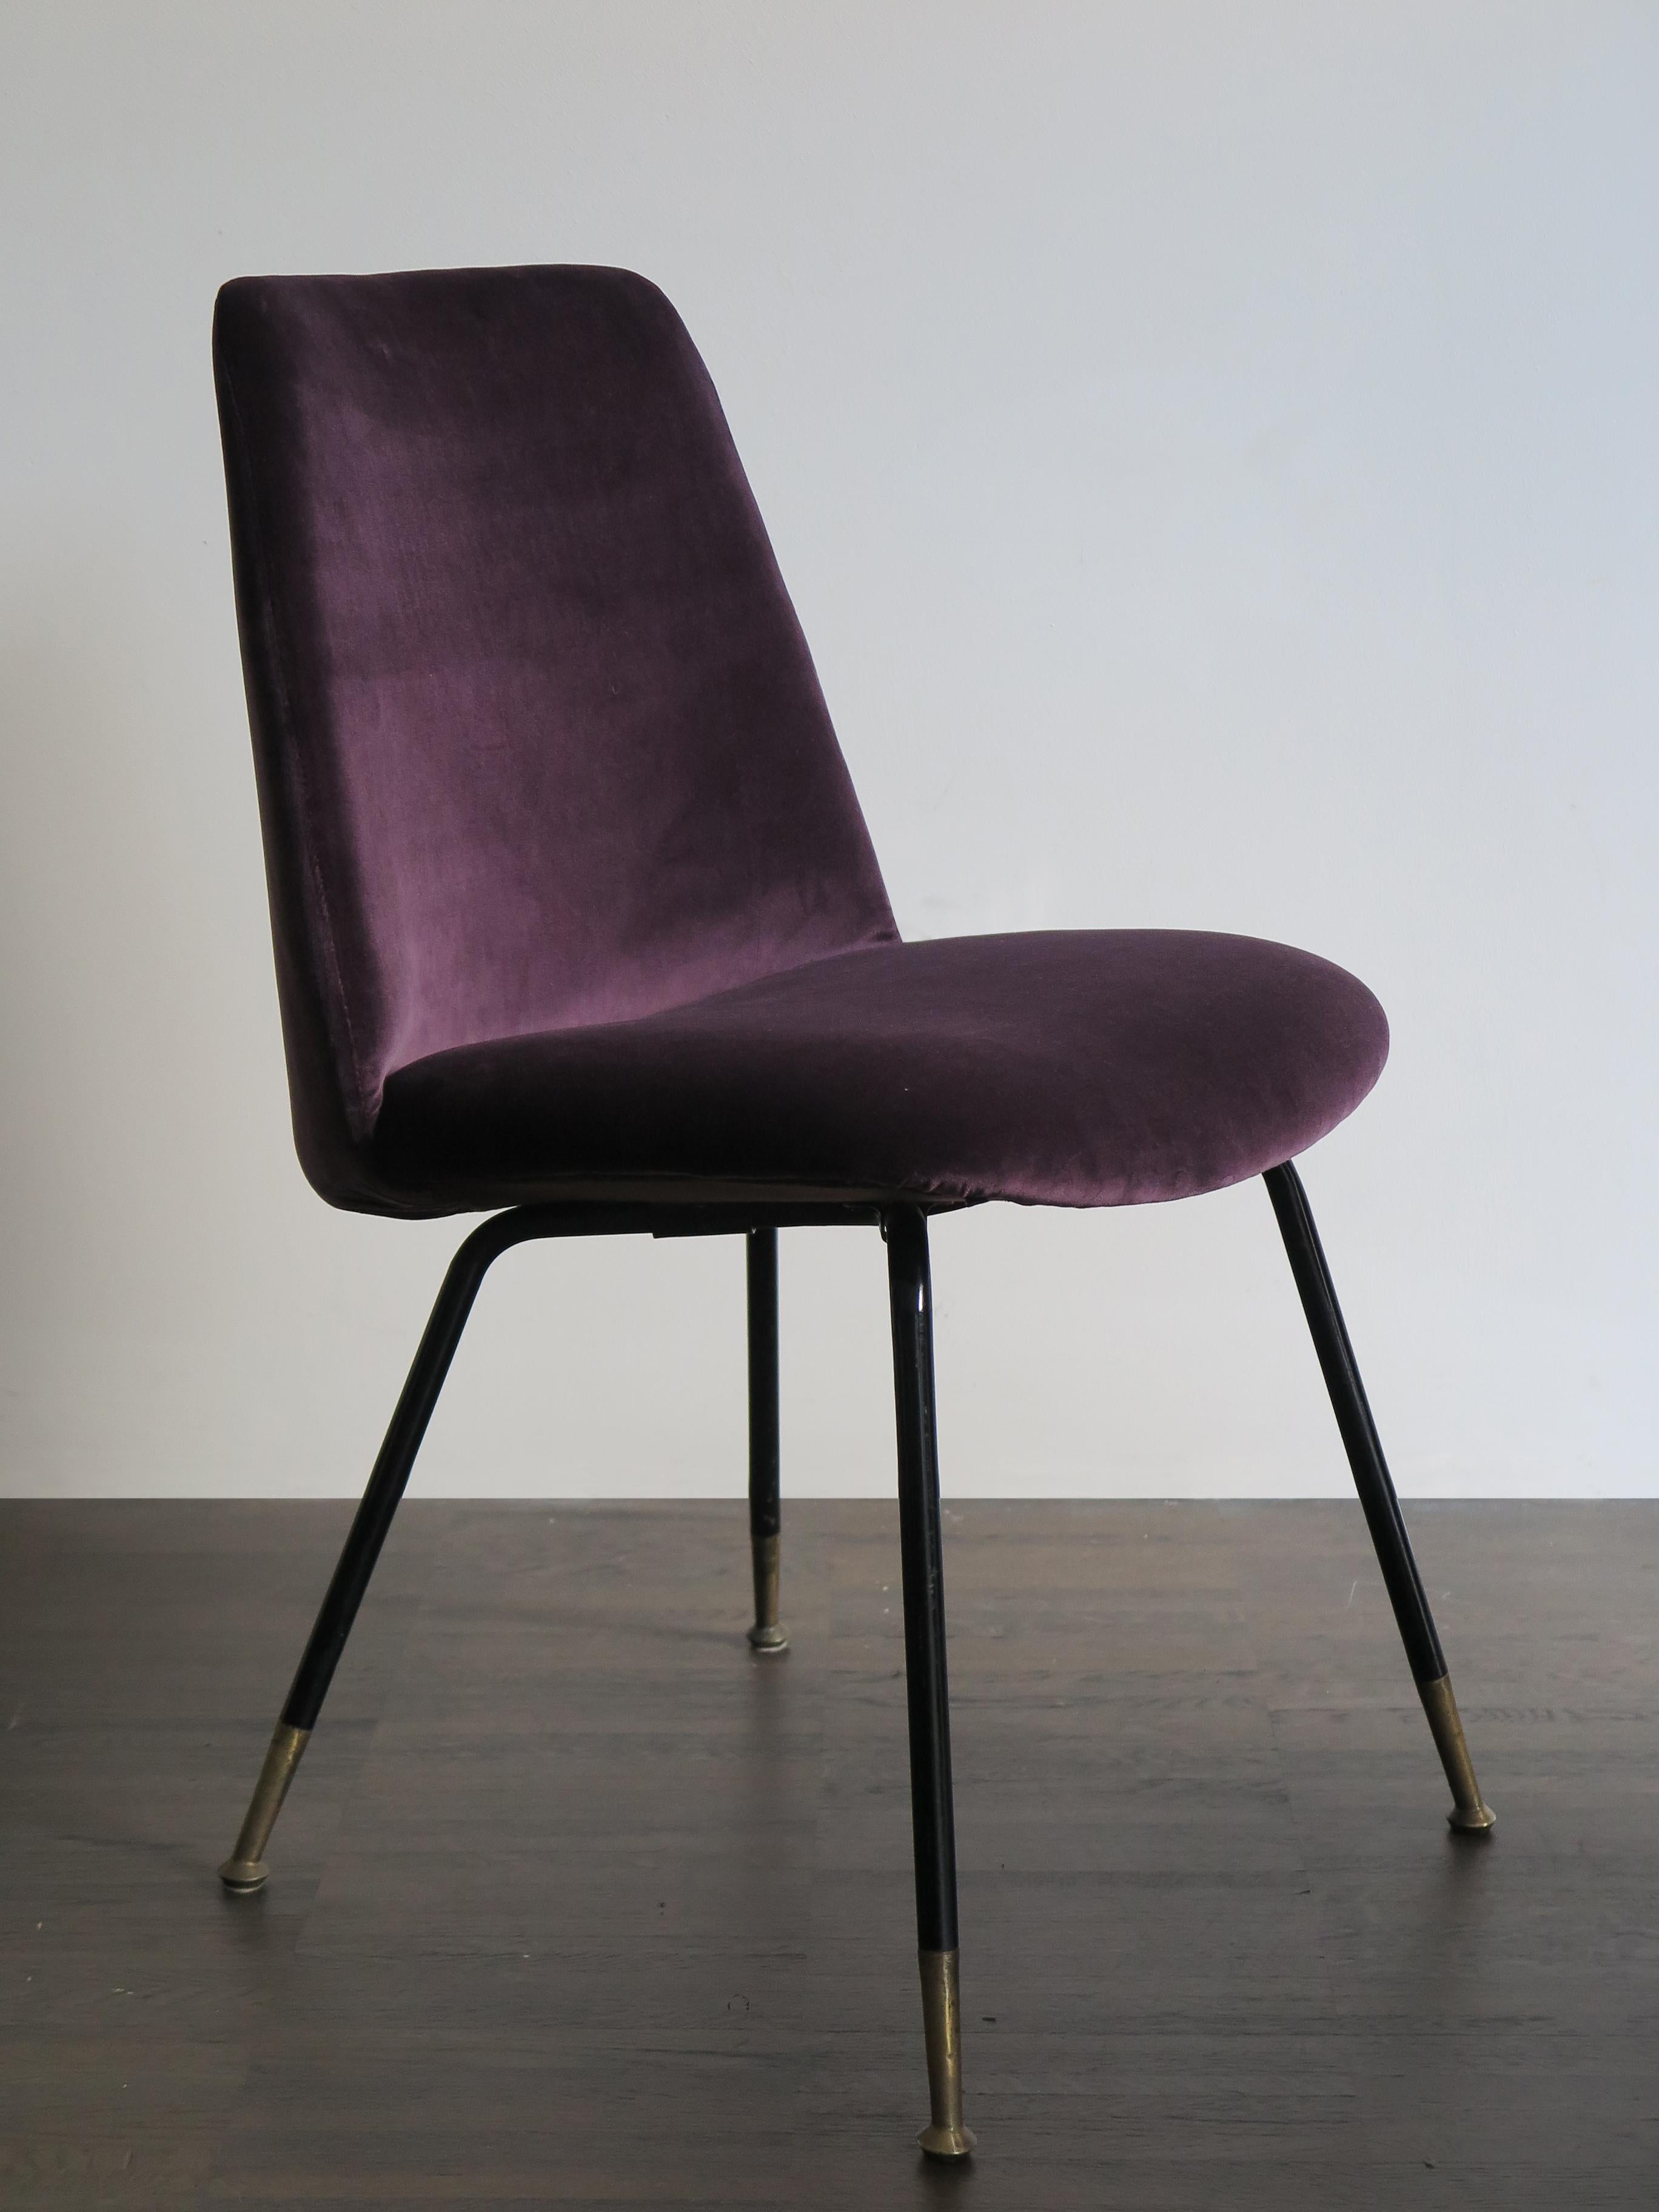 Mid-20th Century Italian Mid-Century Modern Design Velvet Chairs Armchairs, 1950s